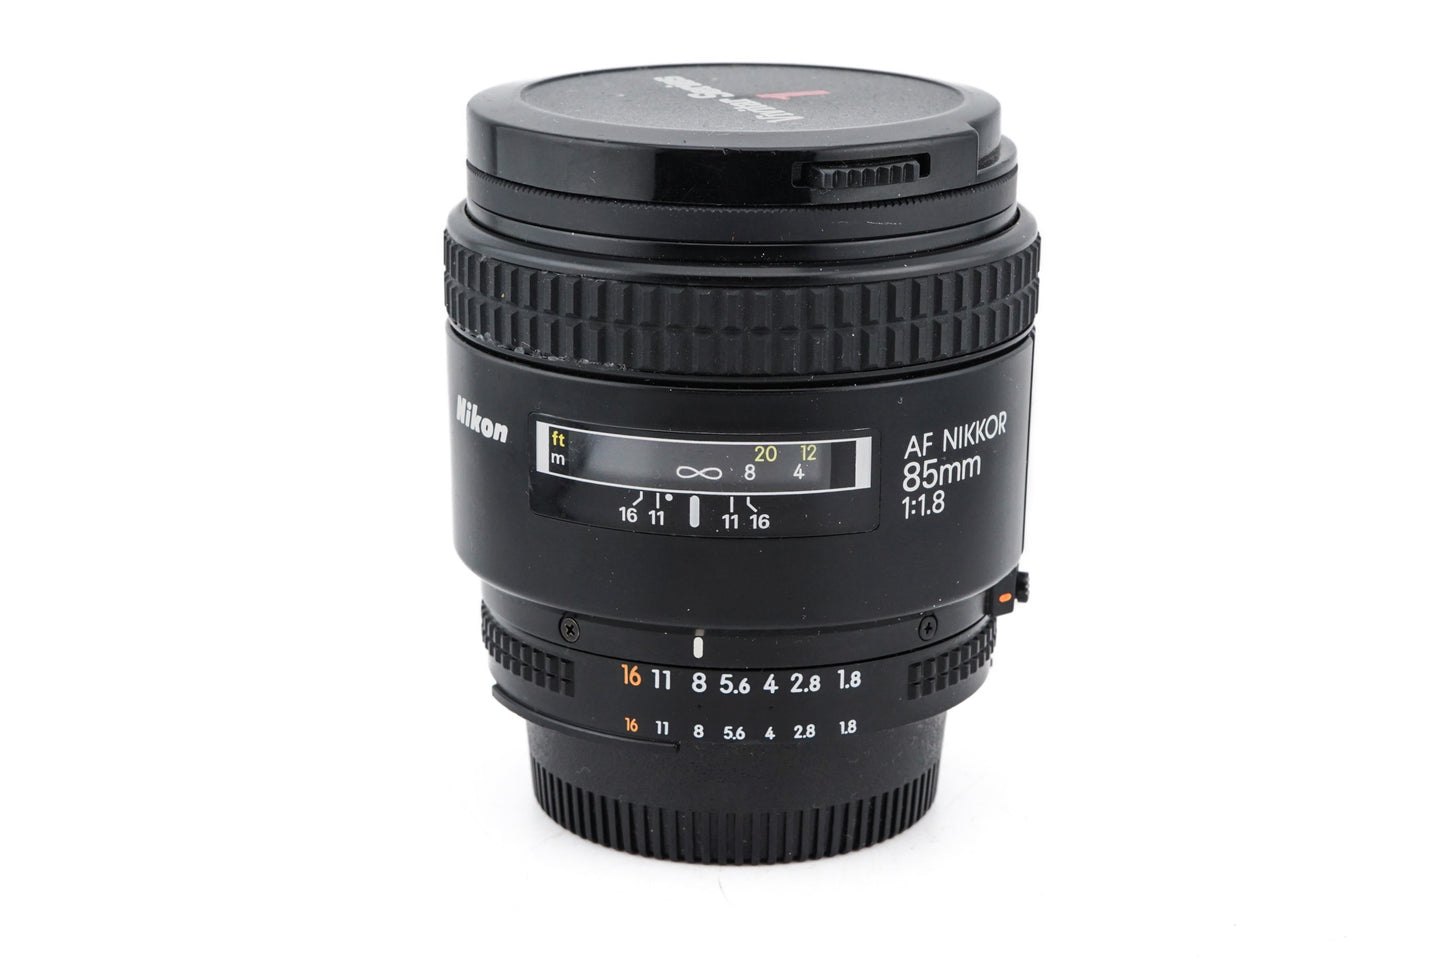 Nikon 85mm f1.8 AF Nikkor - Lens